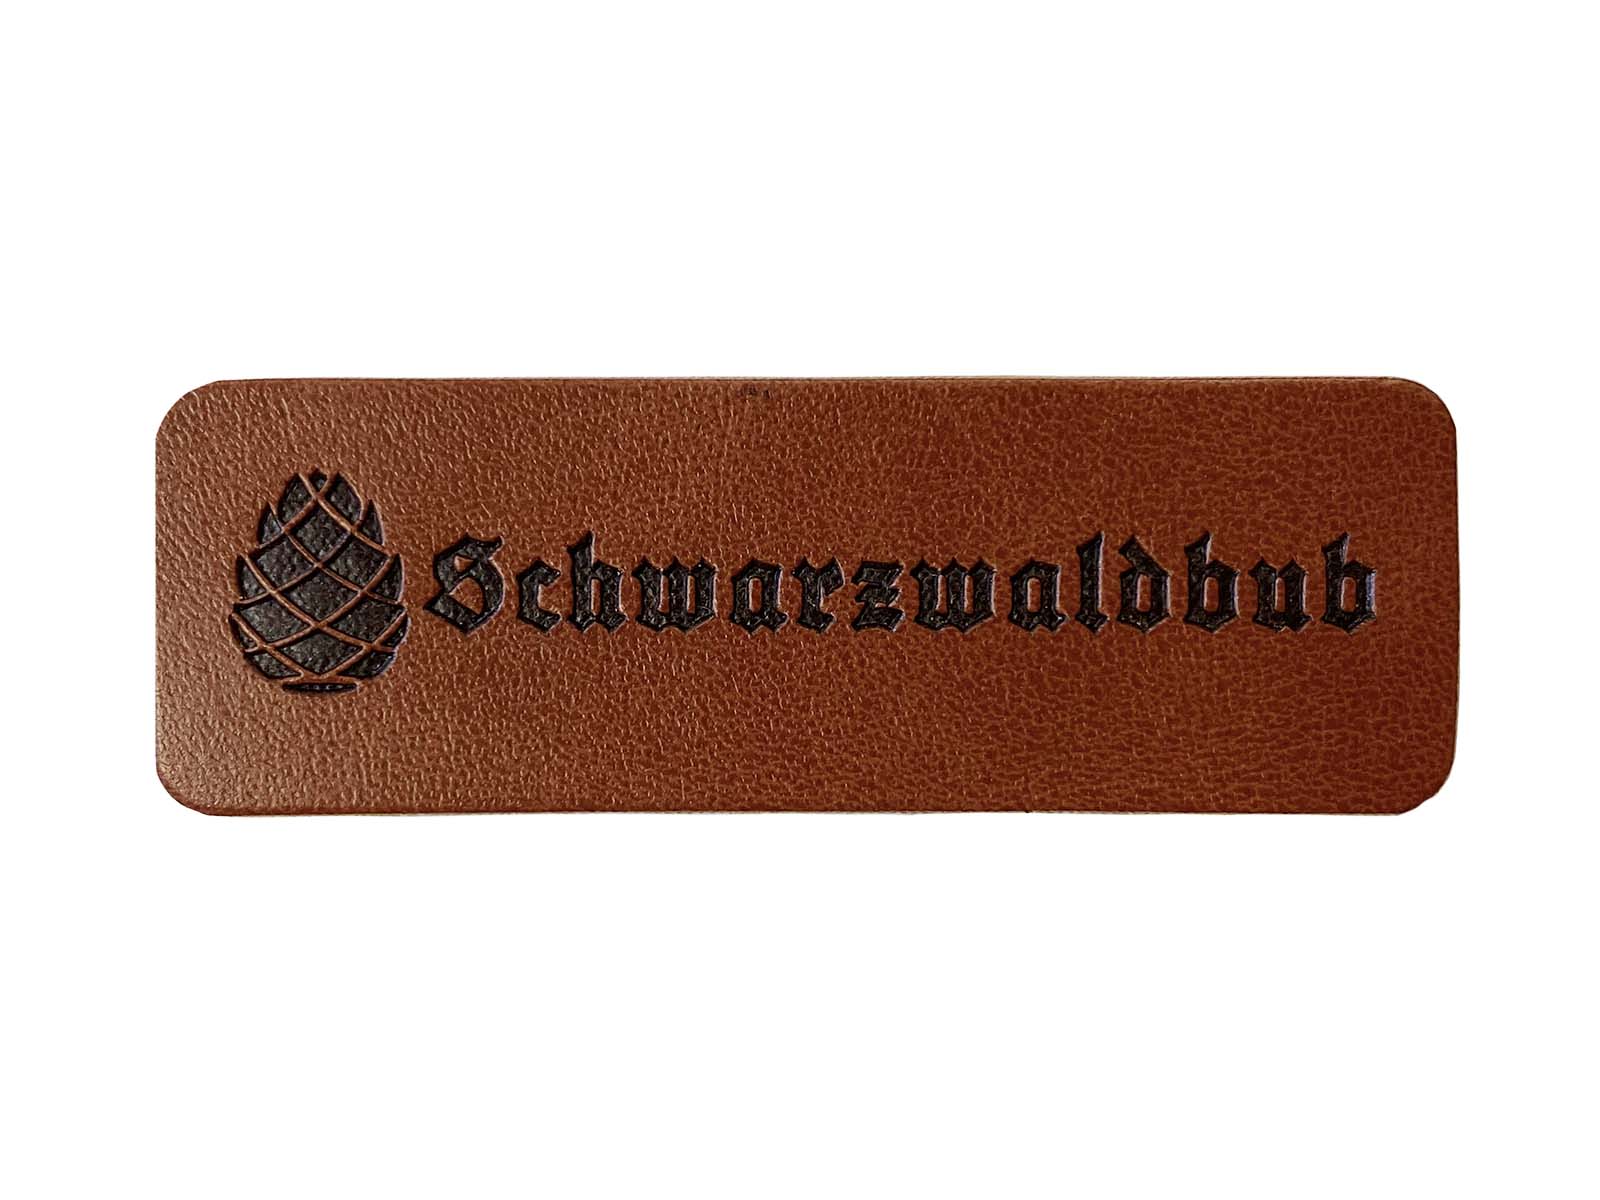 Label aus Kunstleder - "Schwarzwaldbub" in dunkelbraun